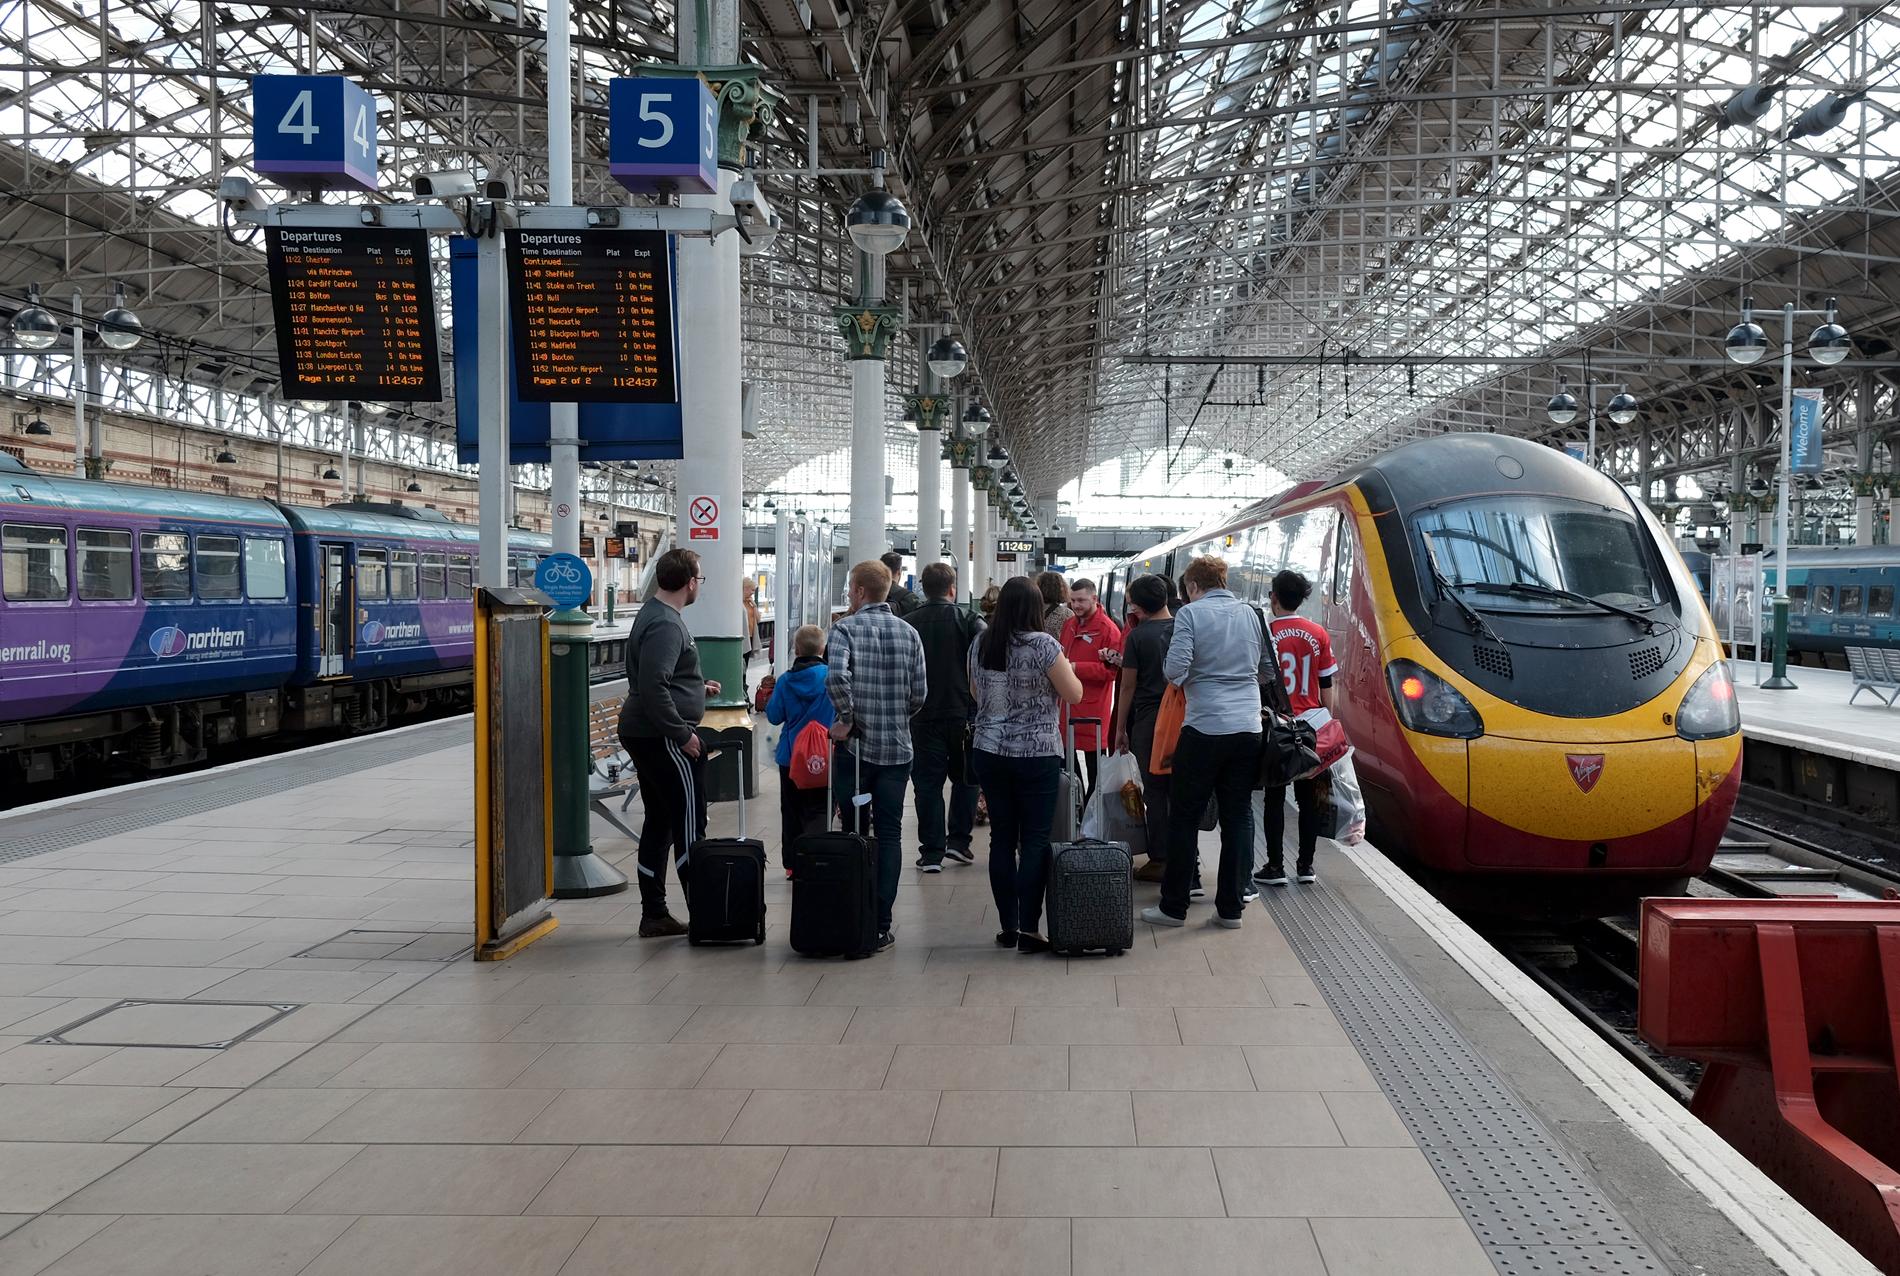 Många olika operatörer gör det brittiska tågsystemet svåröverskådligt. Här står ett Virgin-tåg (till höger) inne på Piccadilly-stationen i Manchester.